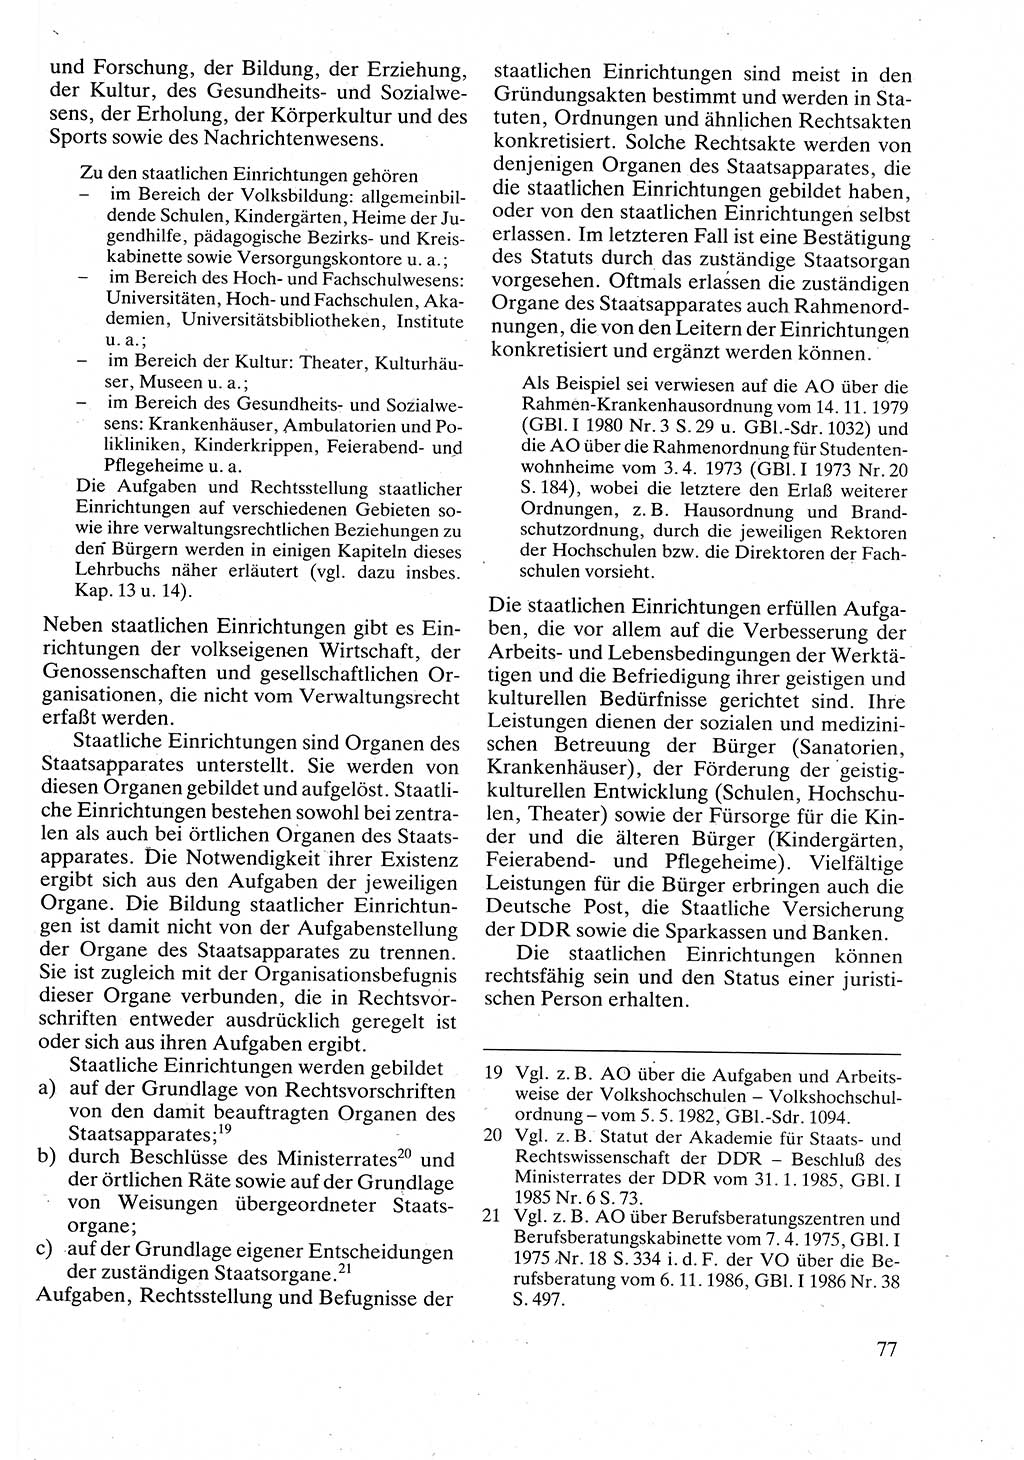 Verwaltungsrecht [Deutsche Demokratische Republik (DDR)], Lehrbuch 1988, Seite 77 (Verw.-R. DDR Lb. 1988, S. 77)